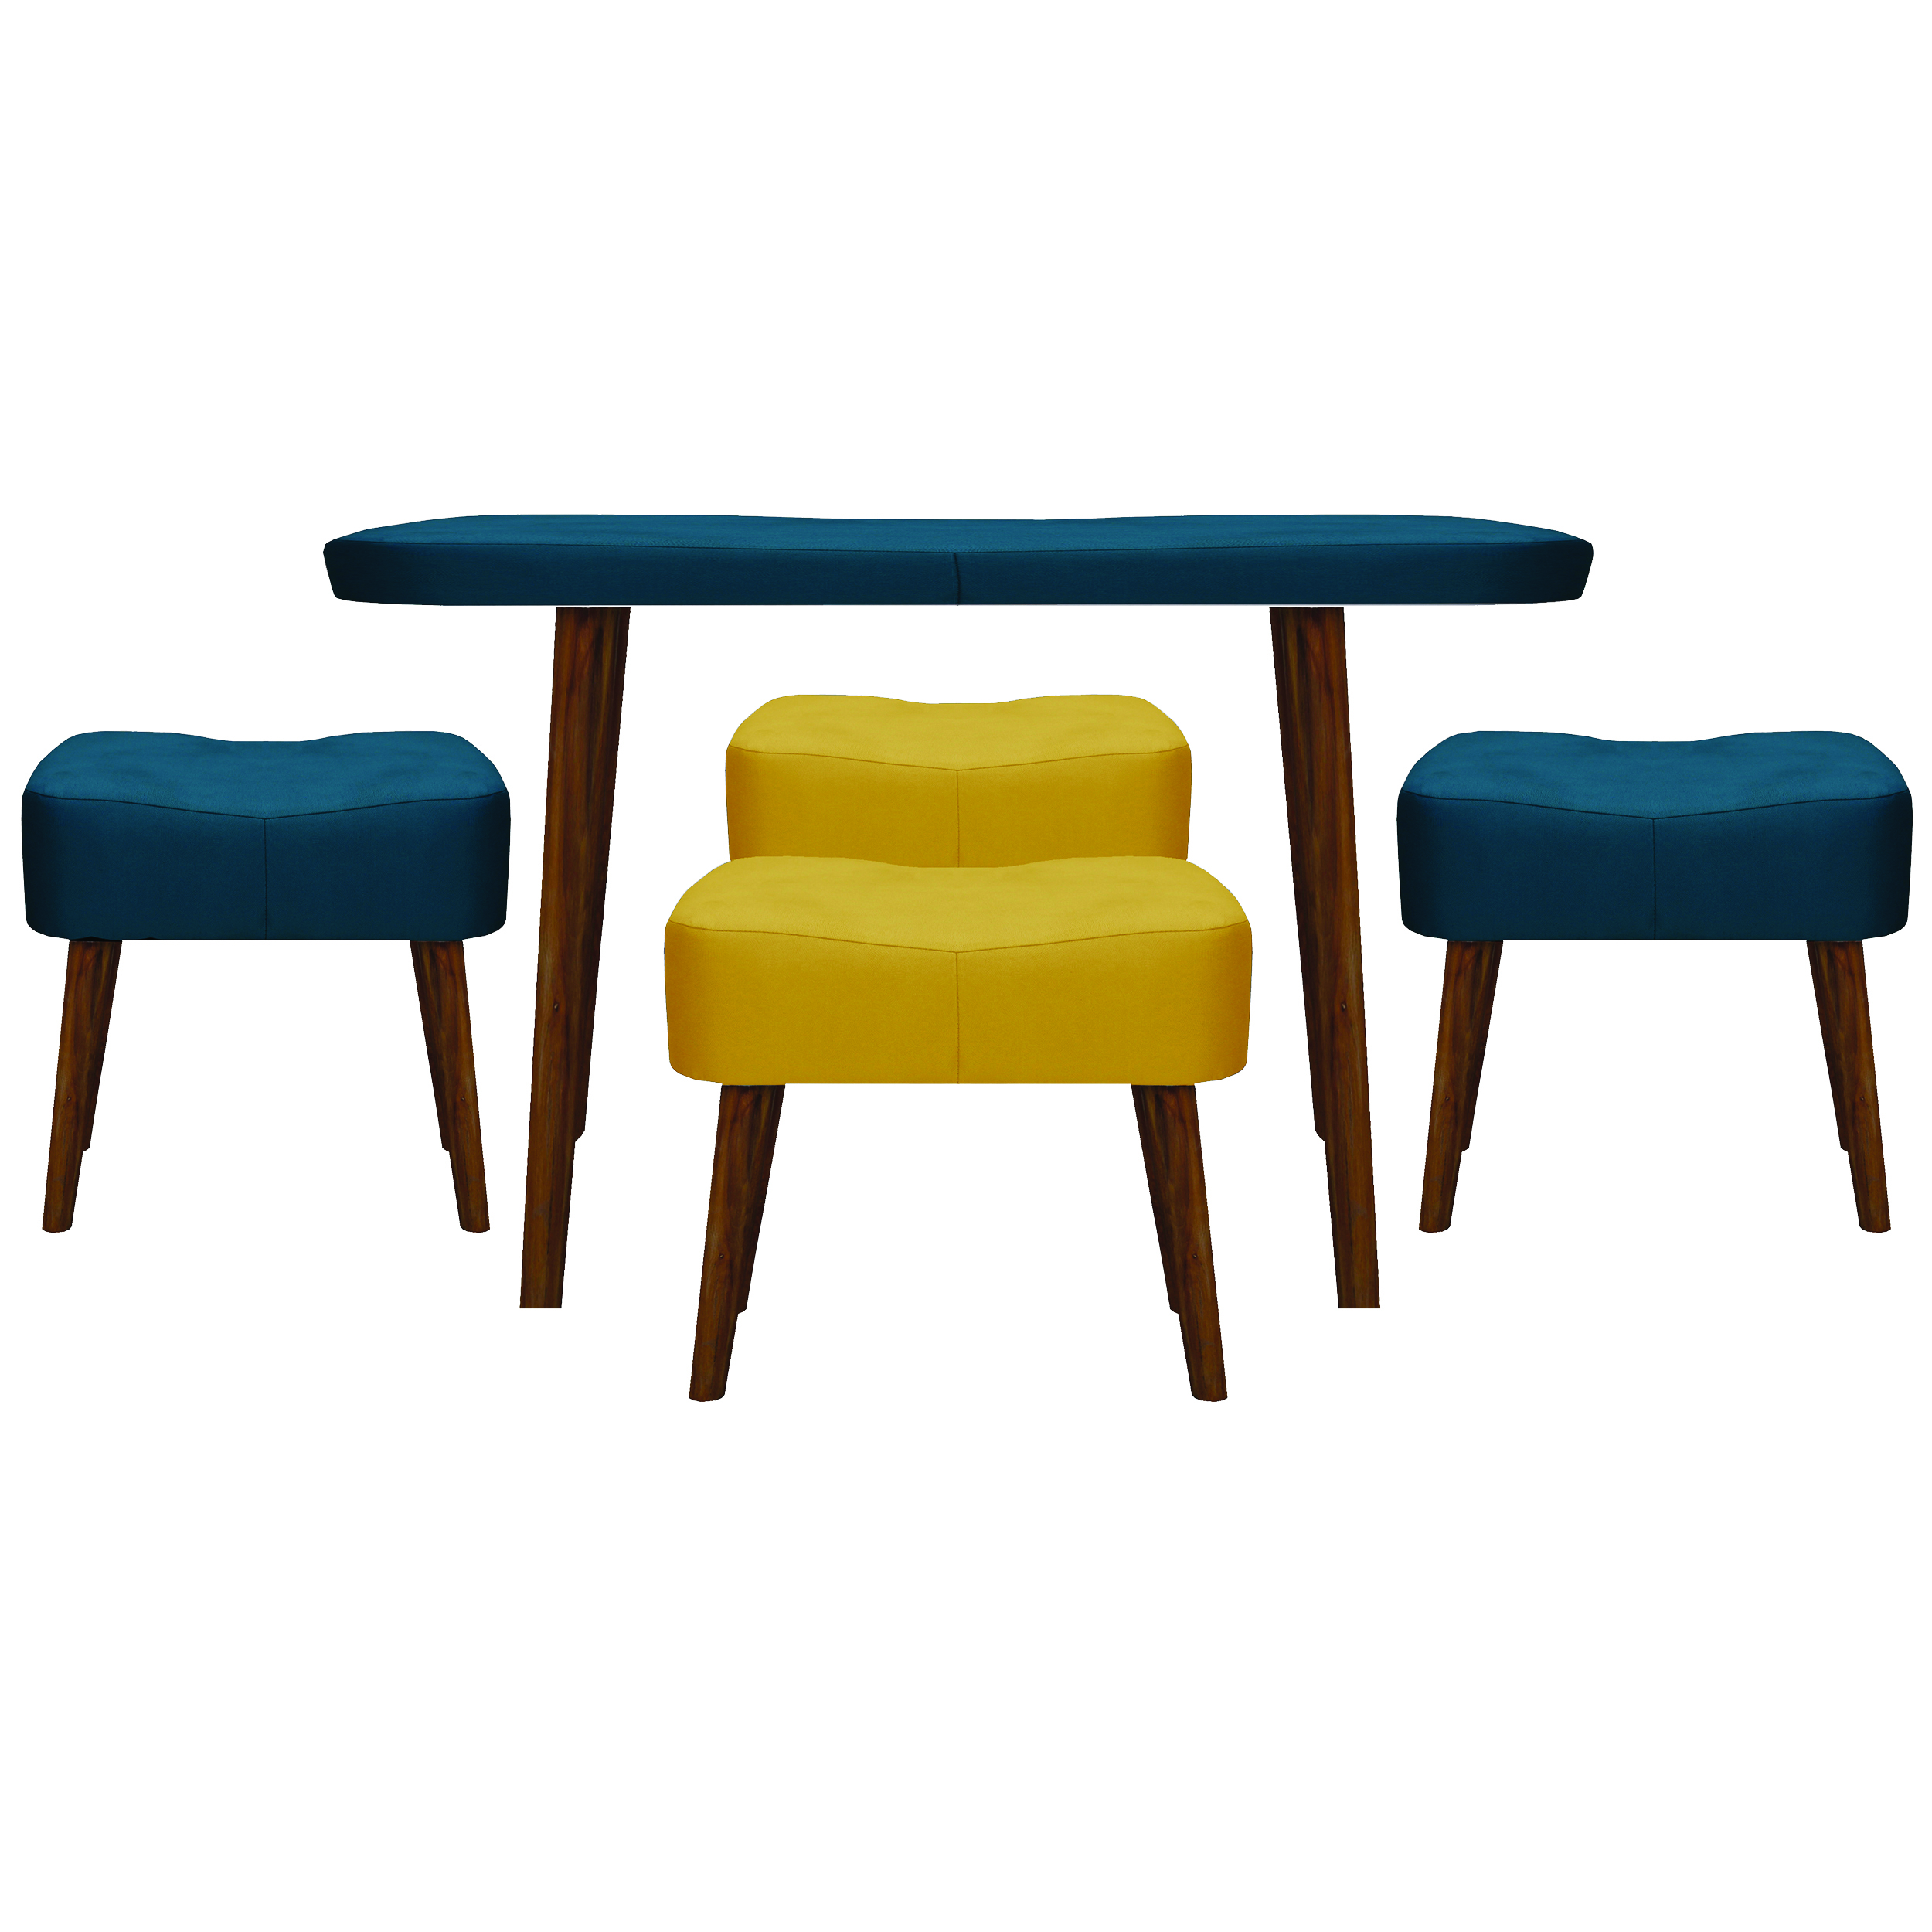 میز و صندلی ناهارخوری مدل kamja کد 313-2081